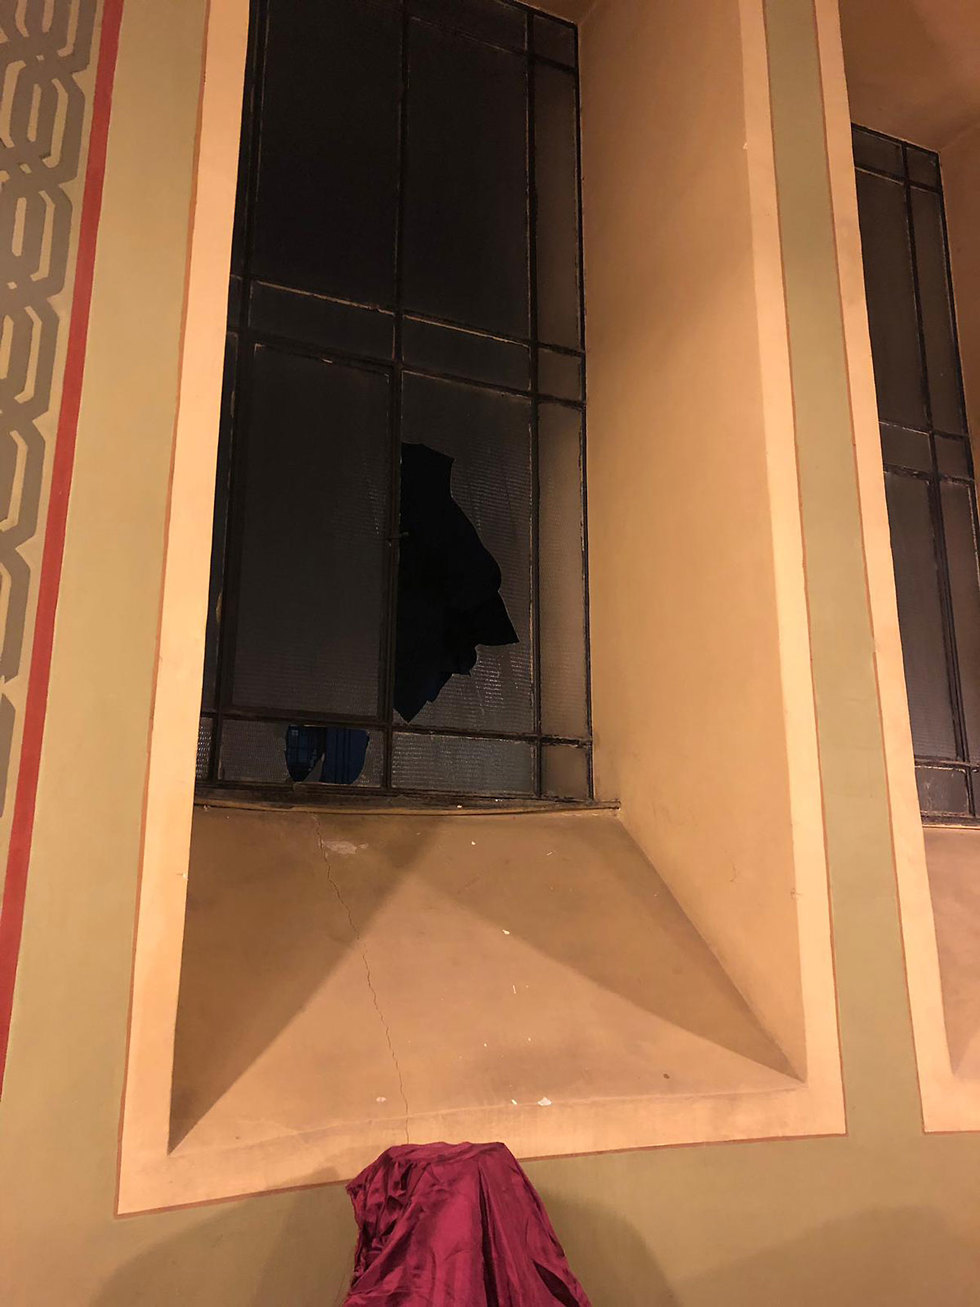 החלון השבור שנופץ בבית הכנסת הגדול בסופיה, בולגריה (צילום: הקהילה היהודית בבולגריה )